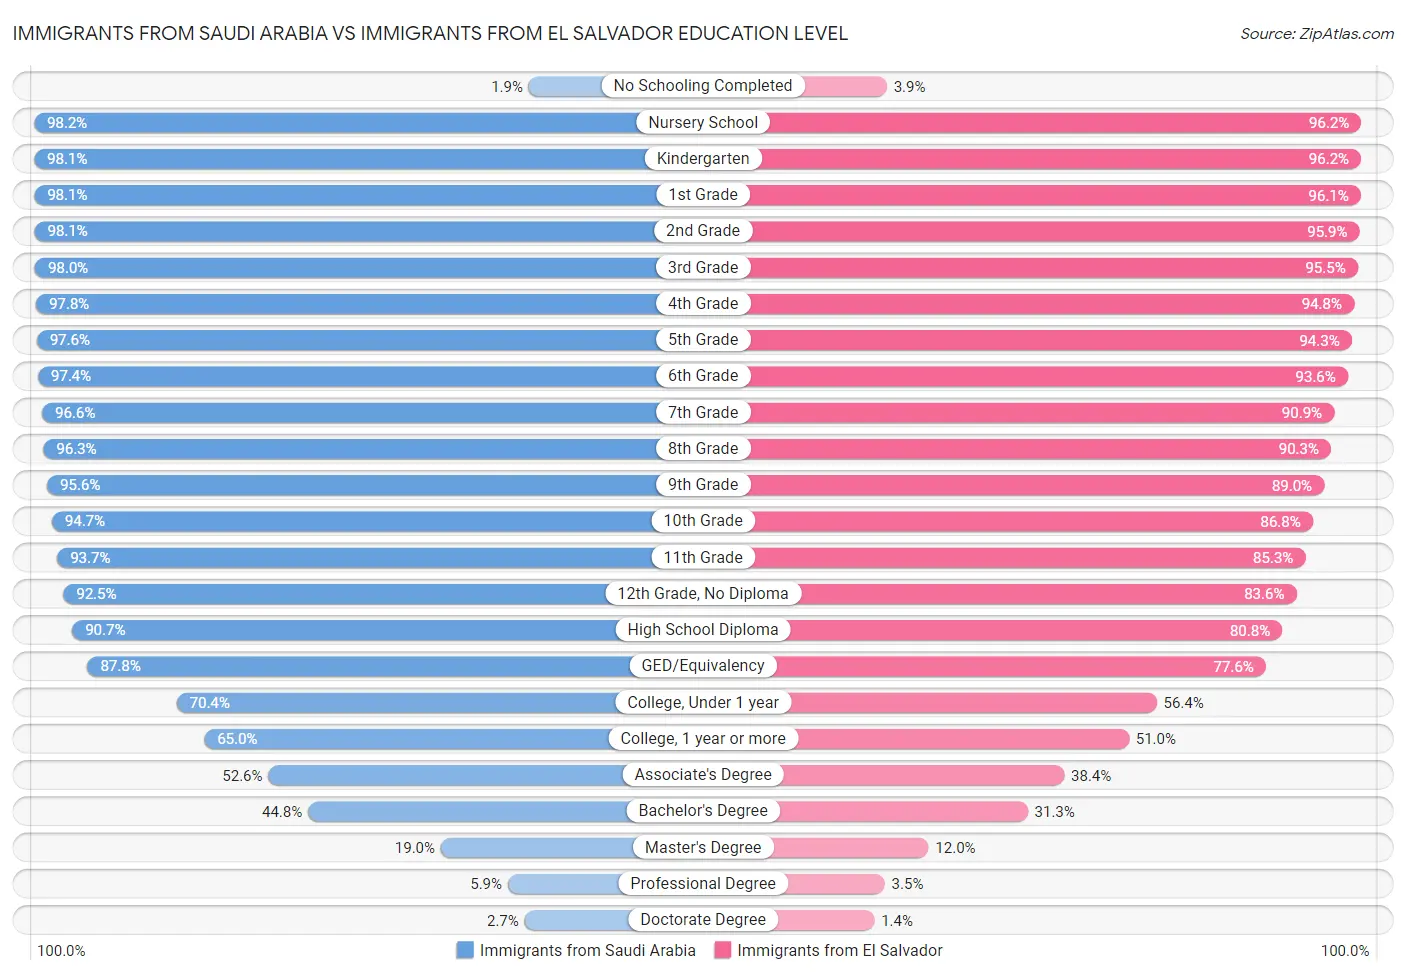 Immigrants from Saudi Arabia vs Immigrants from El Salvador Education Level